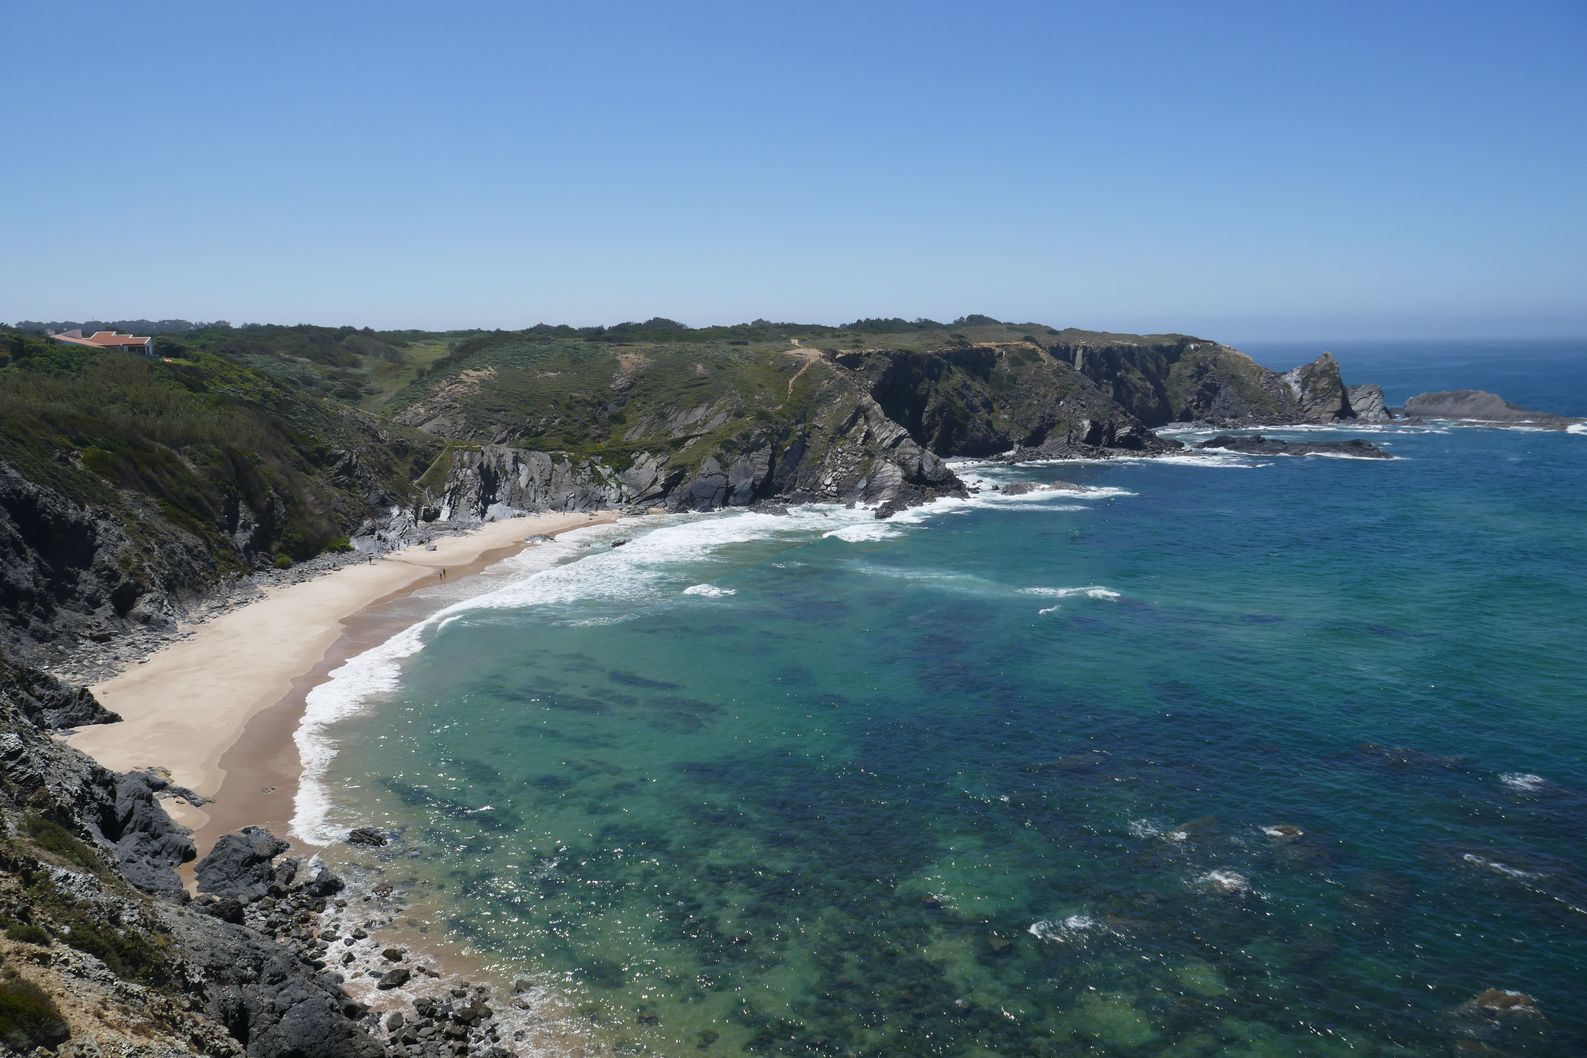 Valokuva Praia da Amaliaista. sijaitsee luonnonalueella